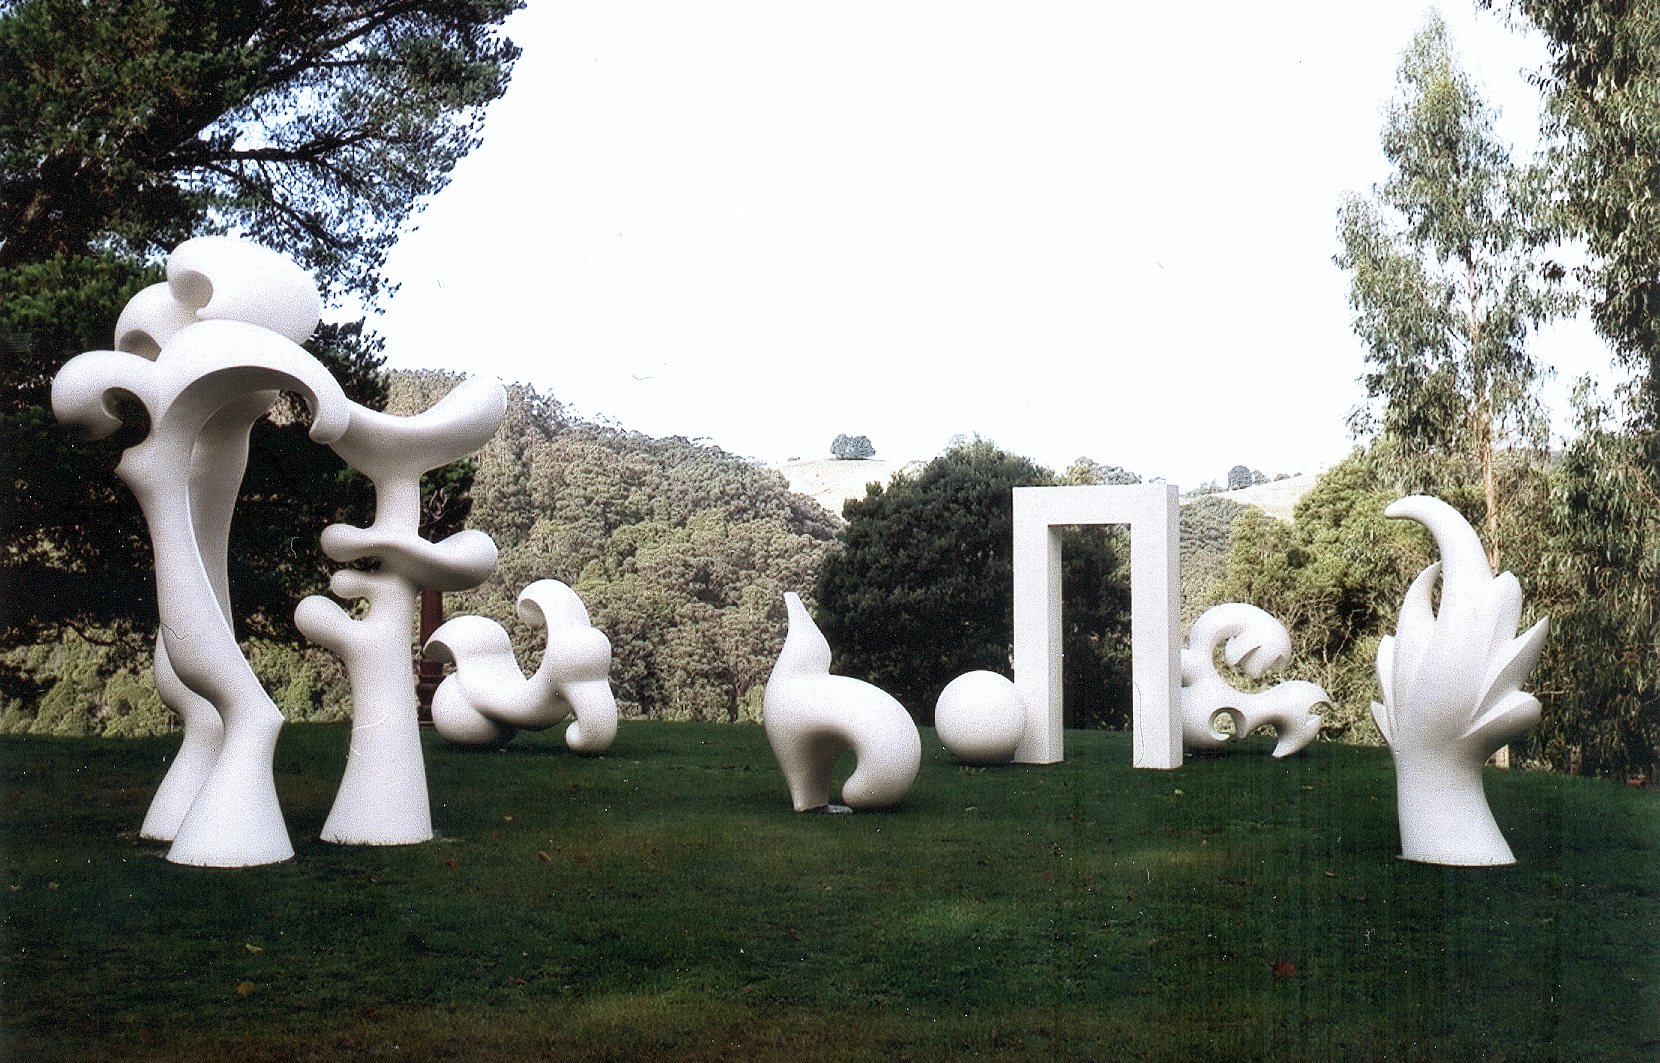 A Sculpture For A New Millennium, 2000, sculpture by Adrian Mauriks.